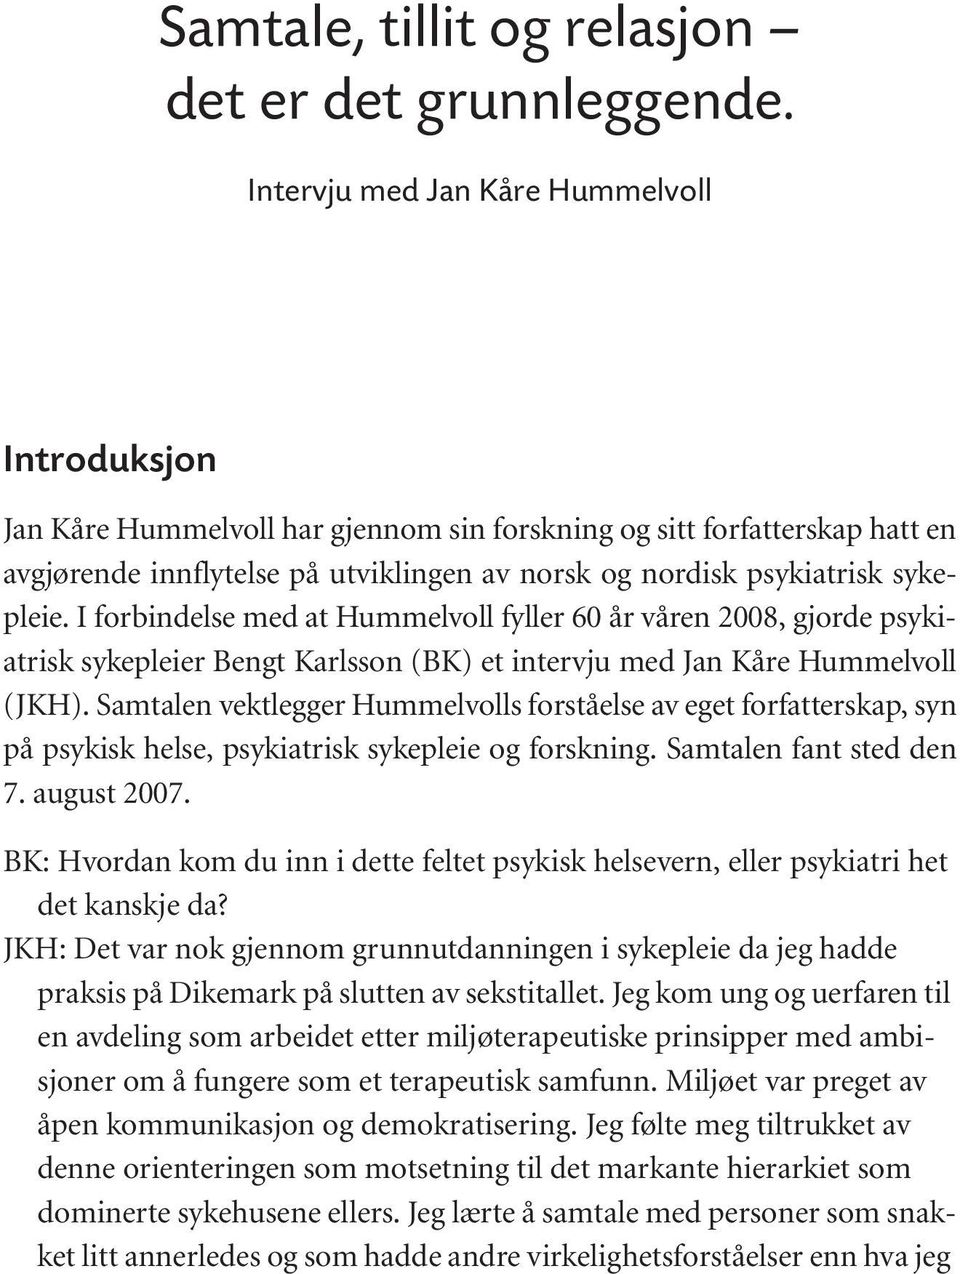 norsk og nordisk psykiatrisk sykepleie. I forbindelse med at Hummelvoll fyller 60 år våren 2008, gjorde psykiatrisk sykepleier Bengt Karlsson (BK) et intervju med Jan Kåre Hummelvoll (JKH).